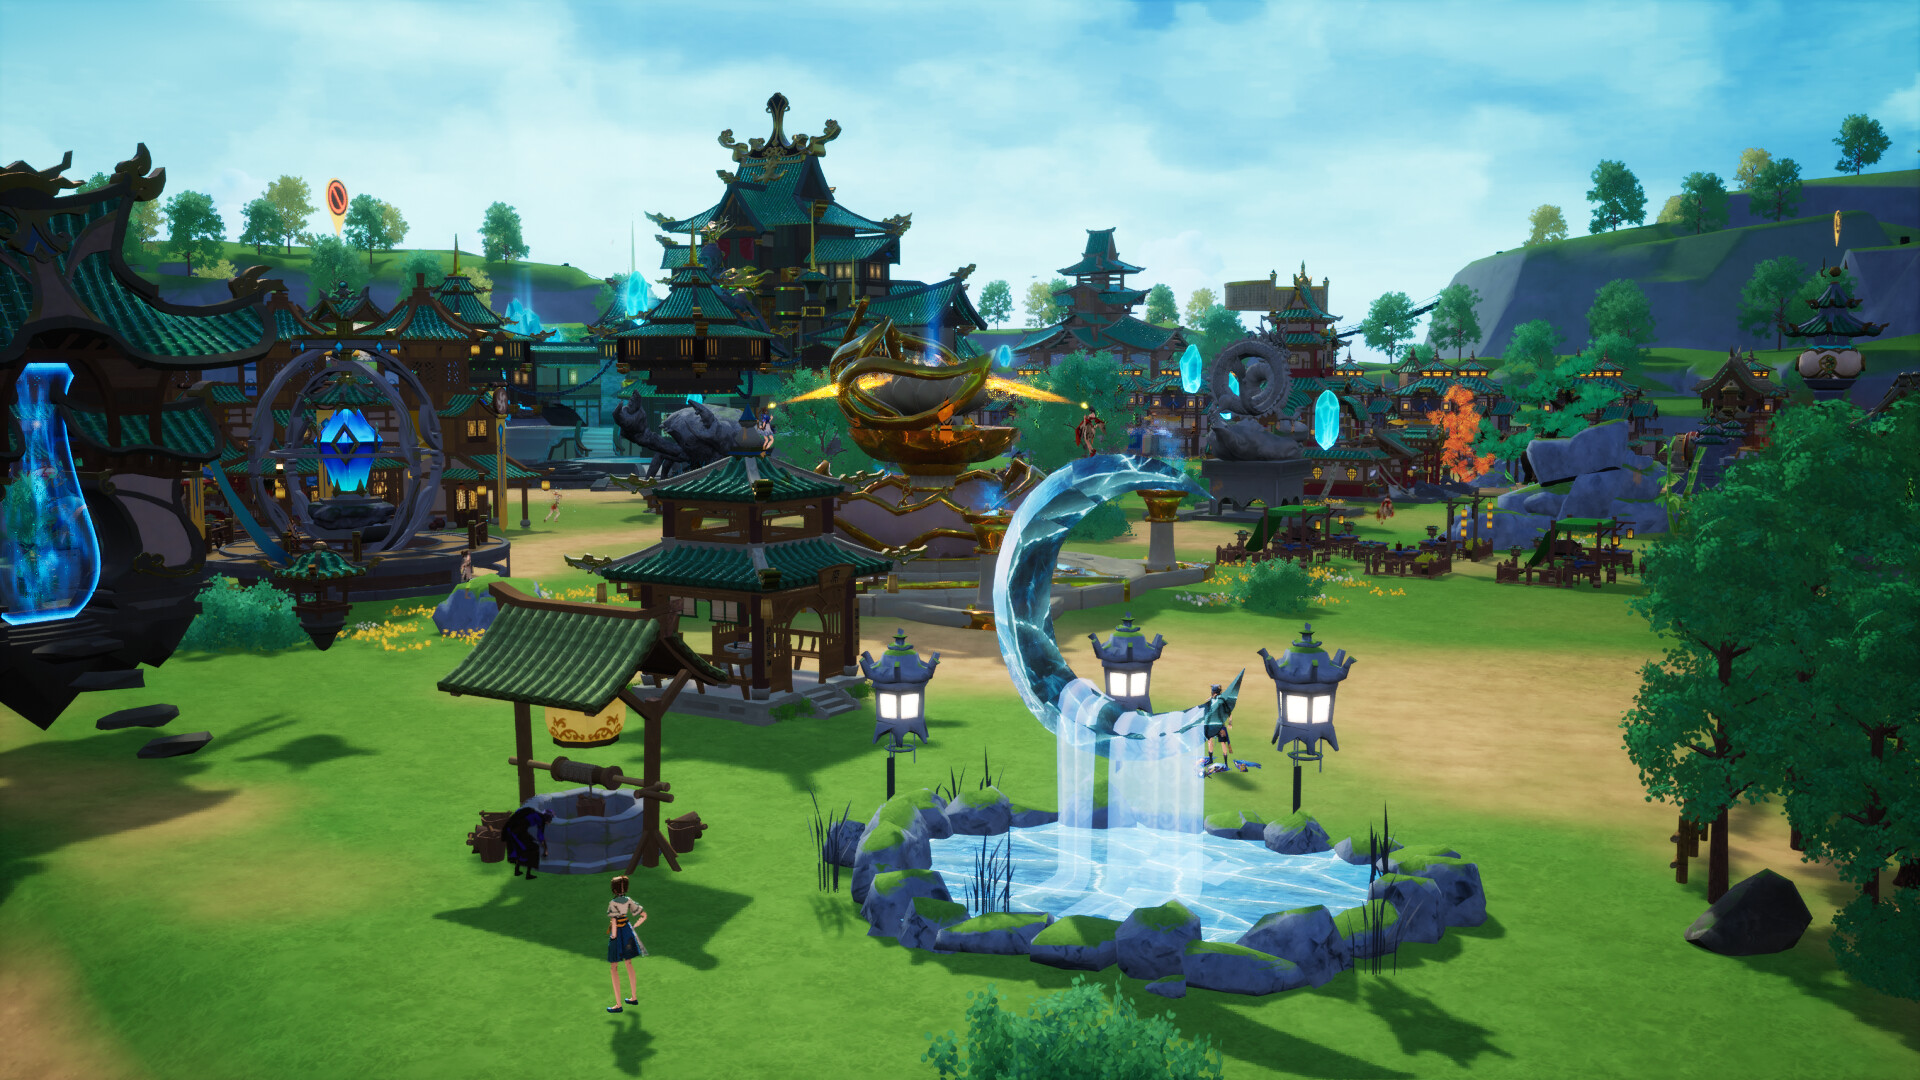 The Lost Village - (Fantasy) 次元入侵扩展包 Featured Screenshot #1